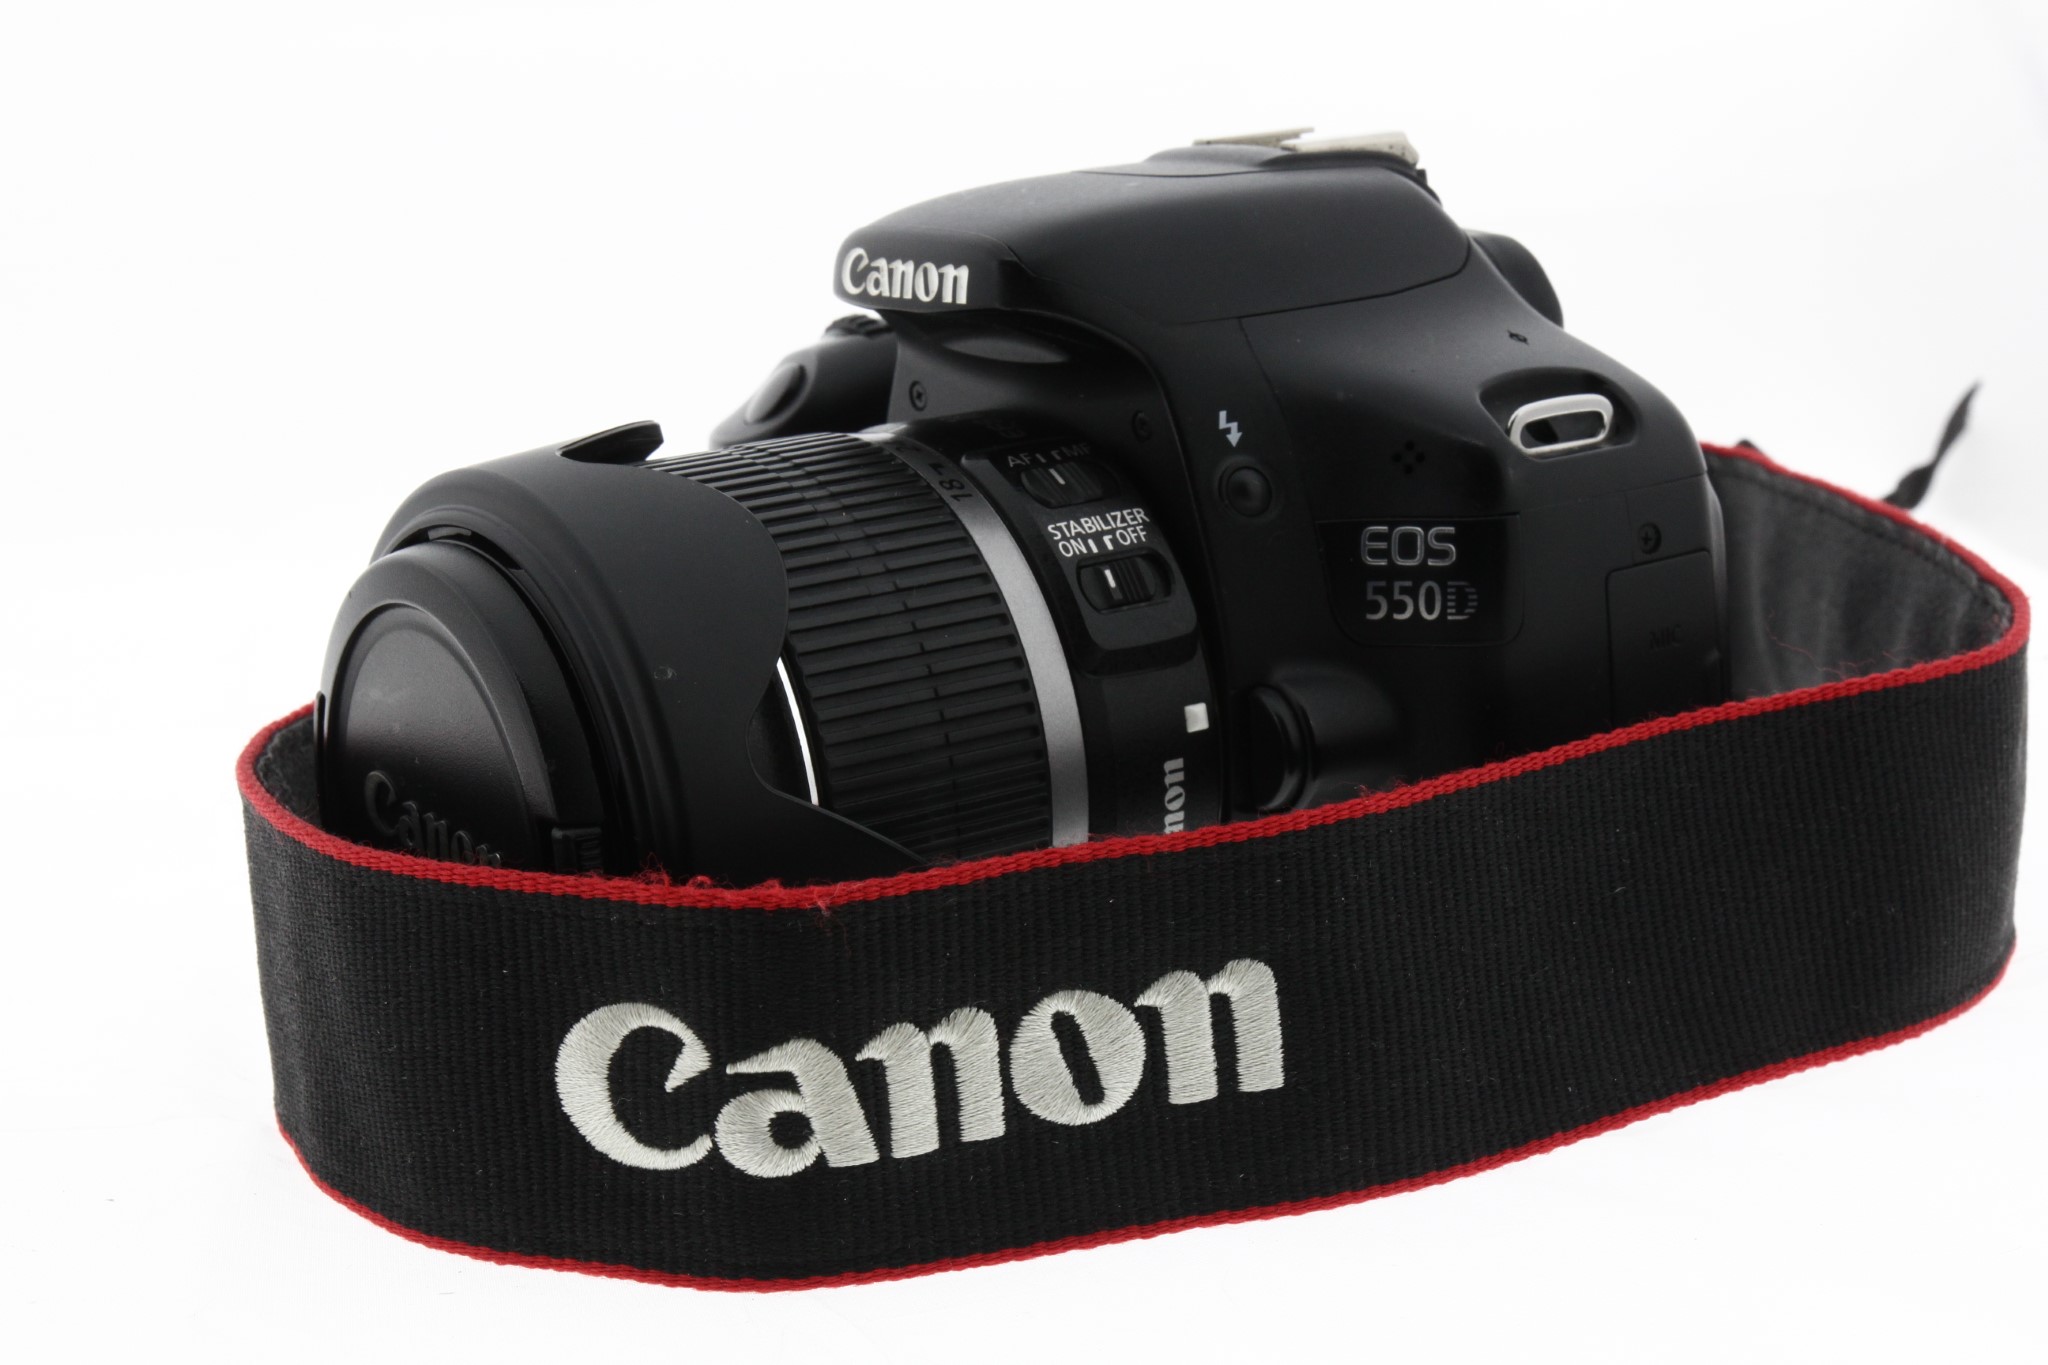 Zrcadlovka Canon 550D + 18-55mm + příslušenství